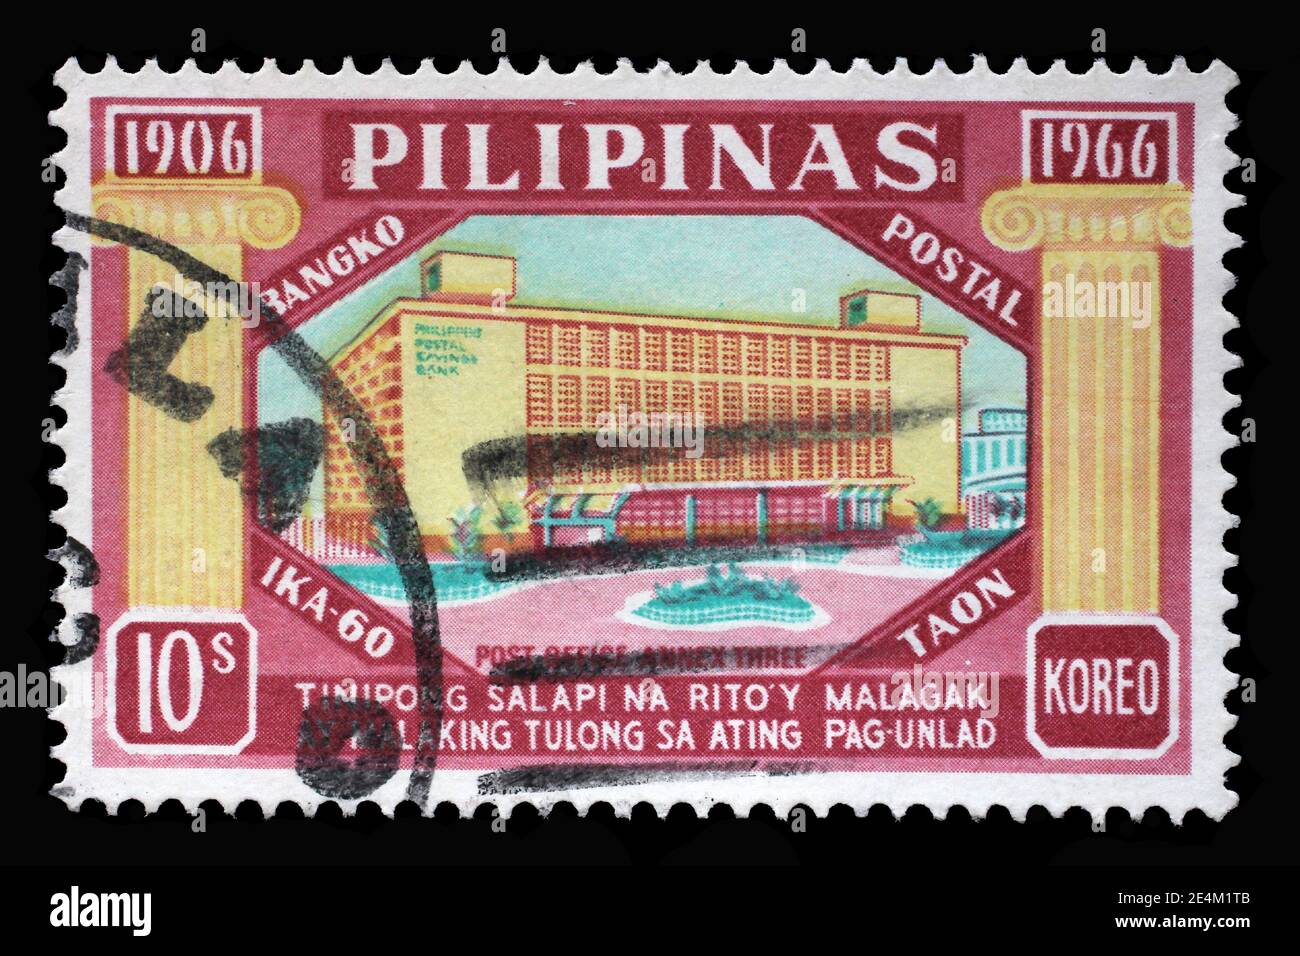 Le timbre imprimé aux Philippines montre le 60e anniversaire de la banque d'épargne postale, vers 1966 Banque D'Images